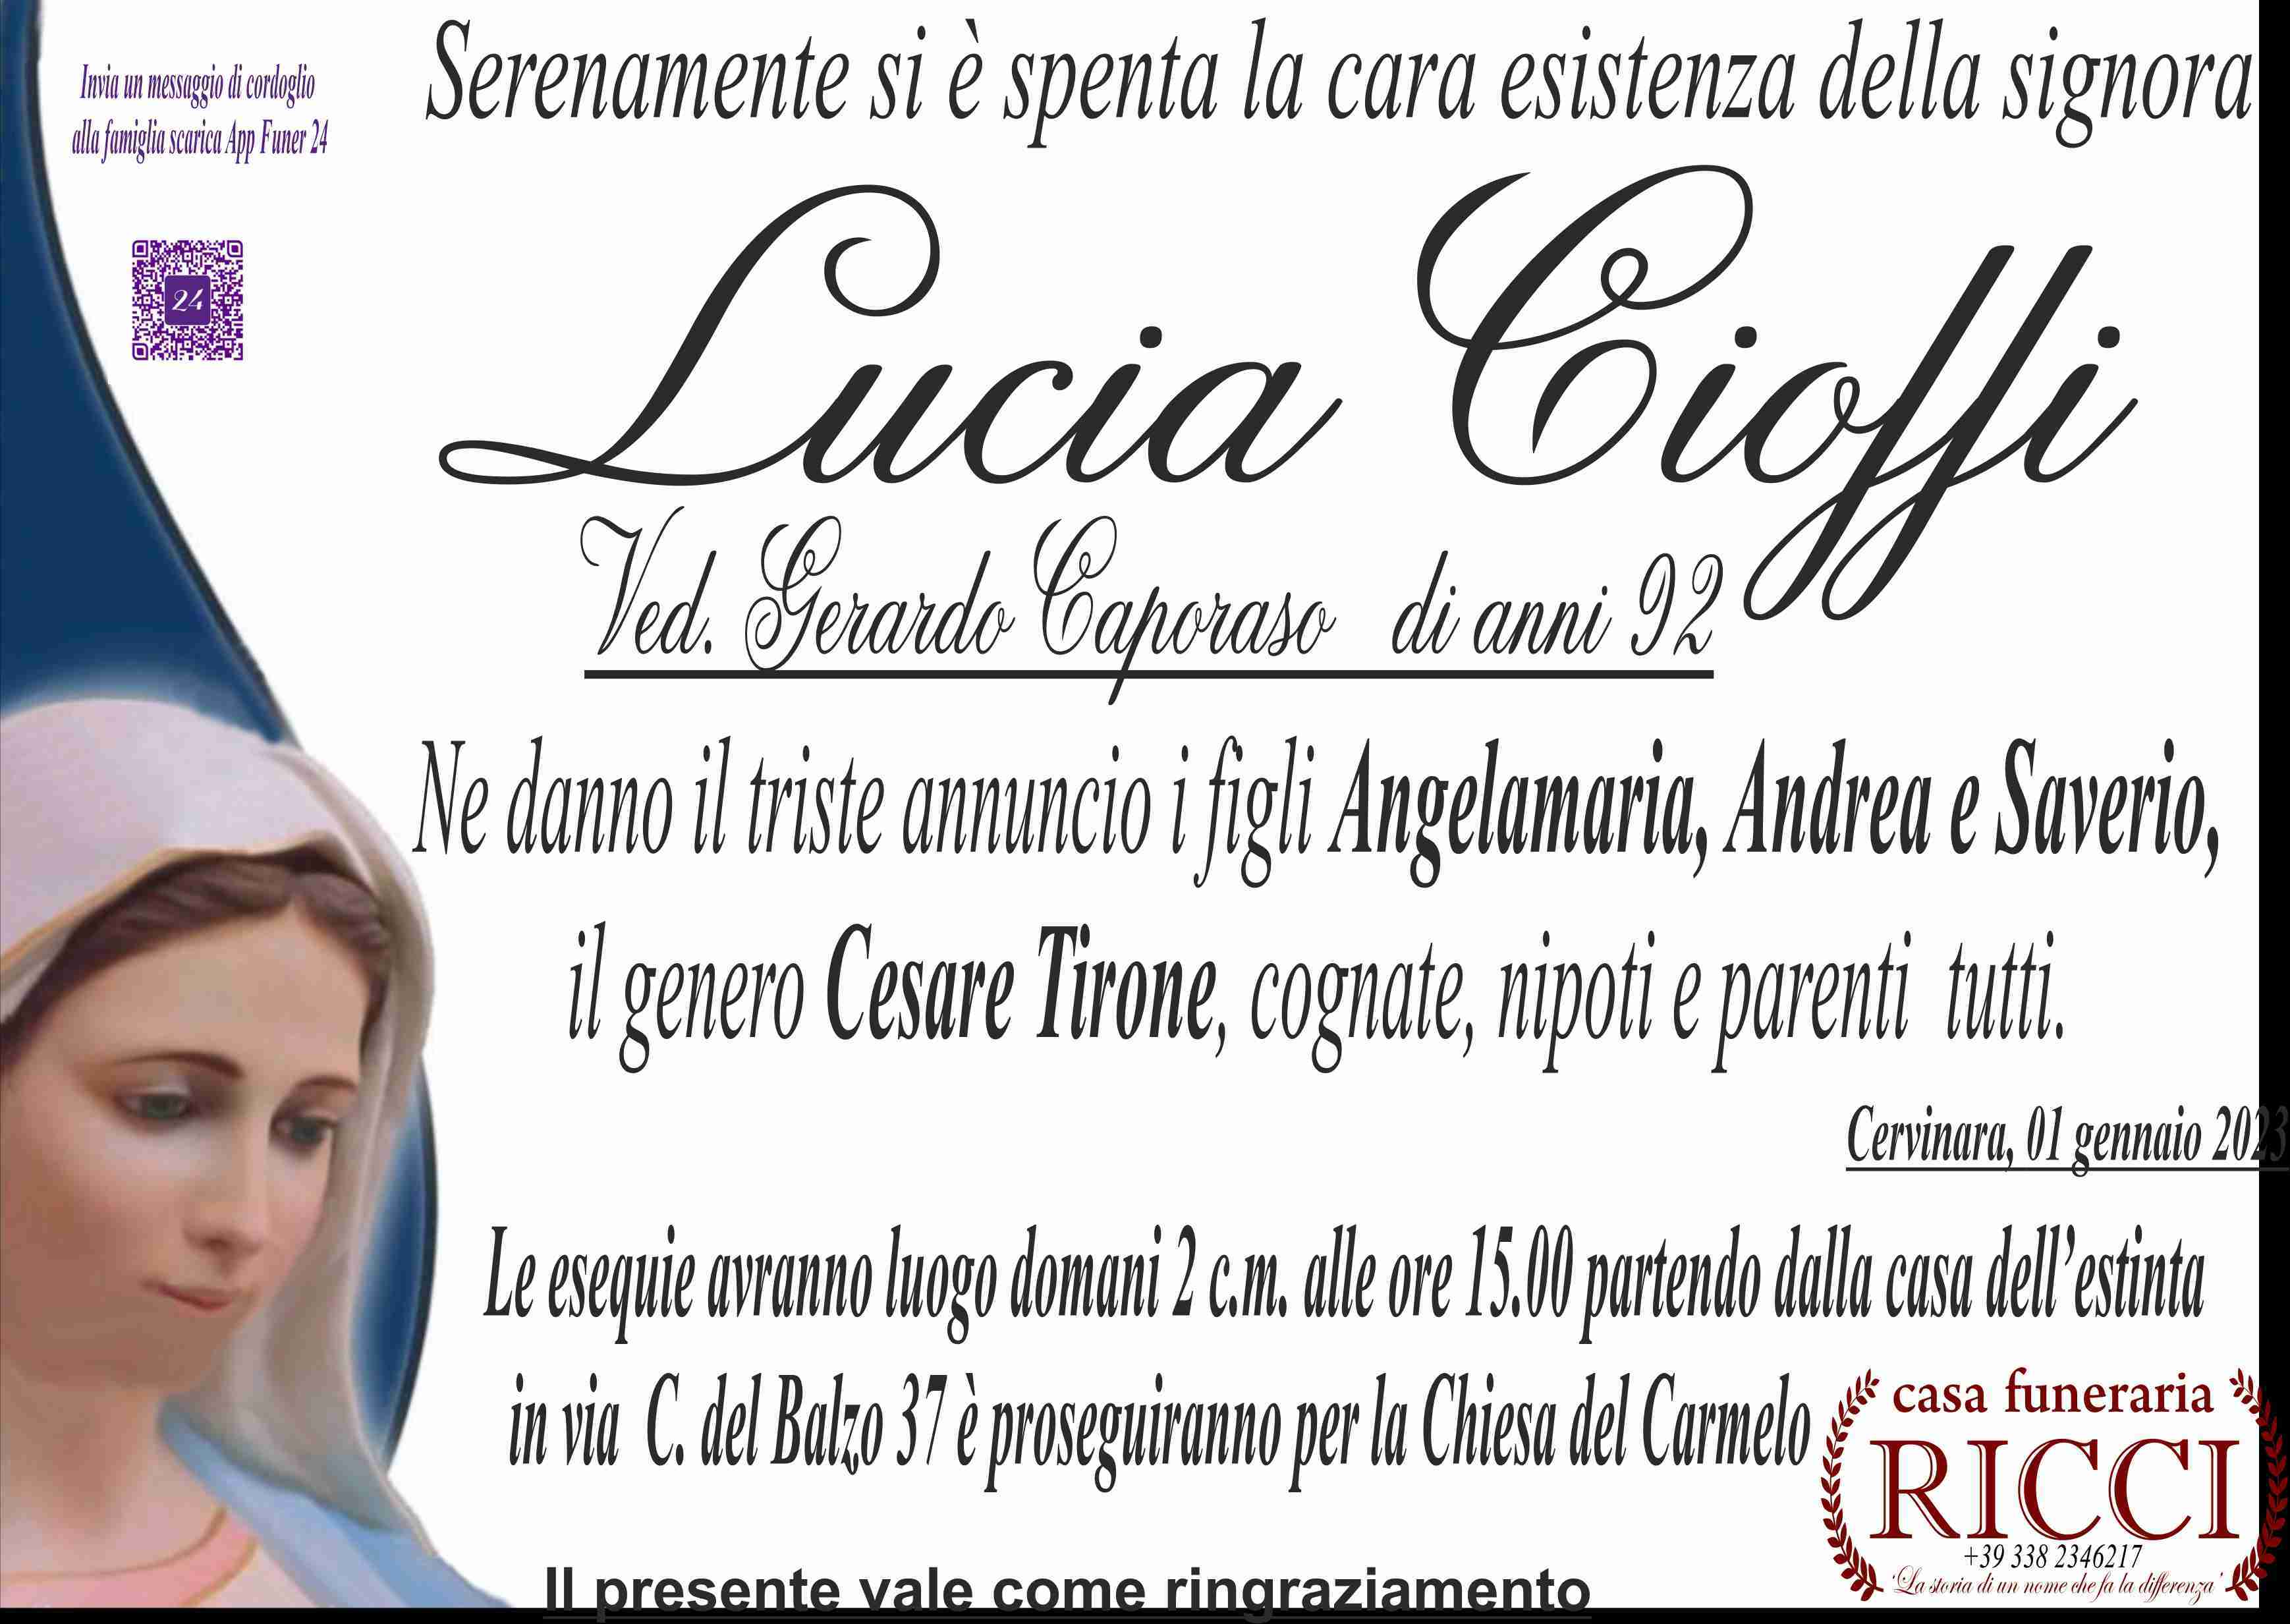 Lucia Cioffi